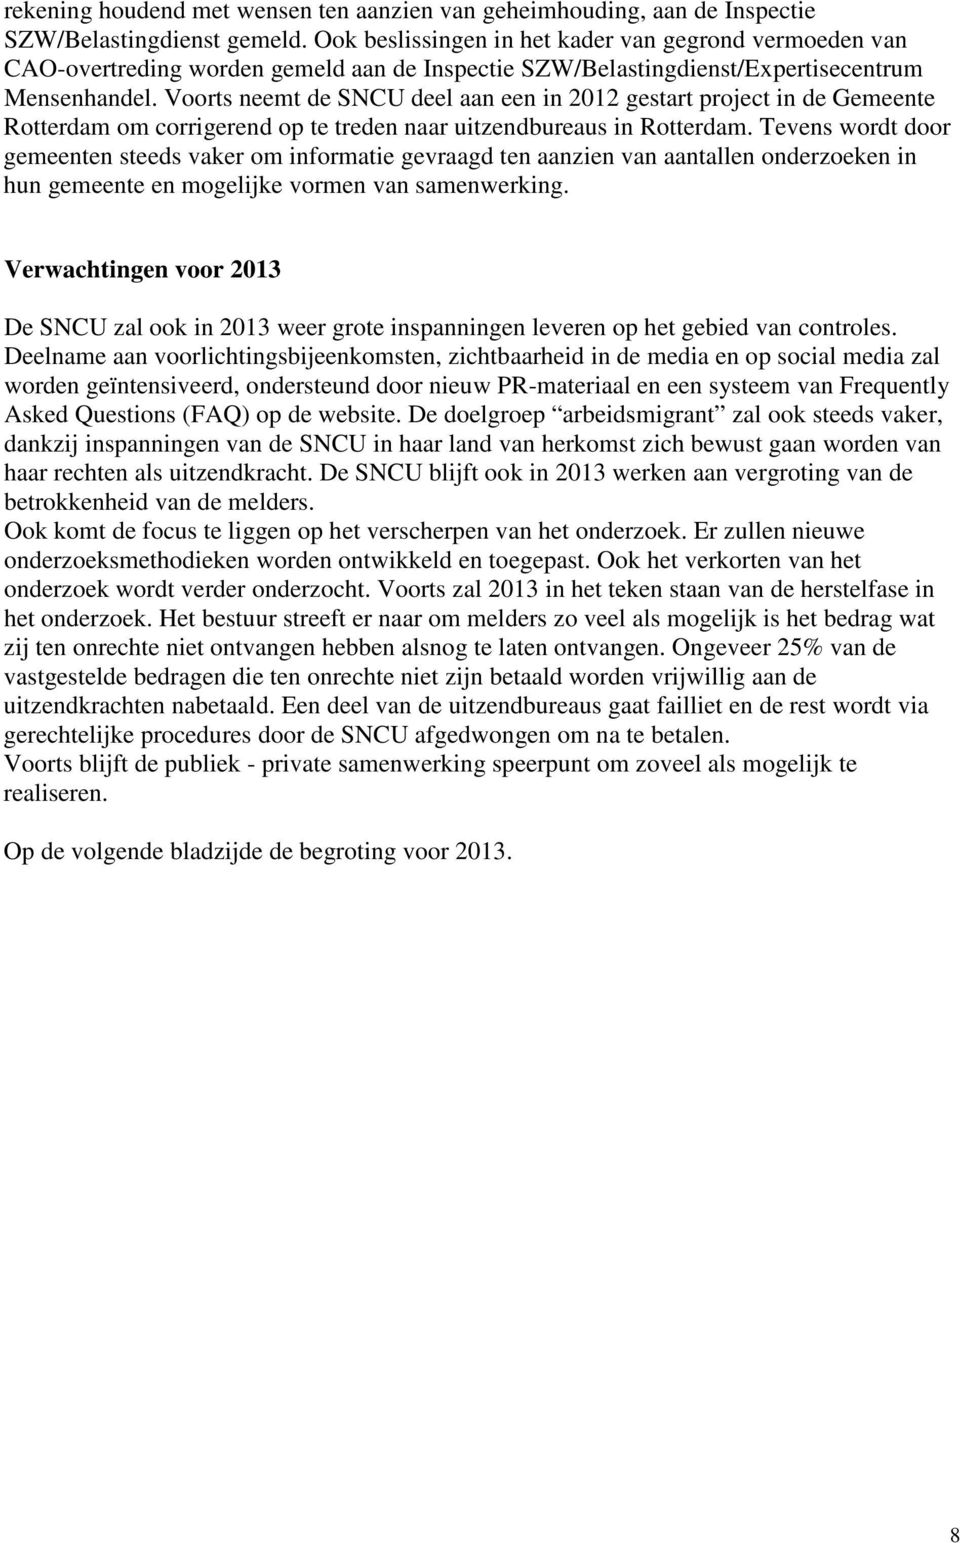 Voorts neemt de SNCU deel aan een in 2012 gestart project in de Gemeente Rotterdam om corrigerend op te treden naar uitzendbureaus in Rotterdam.